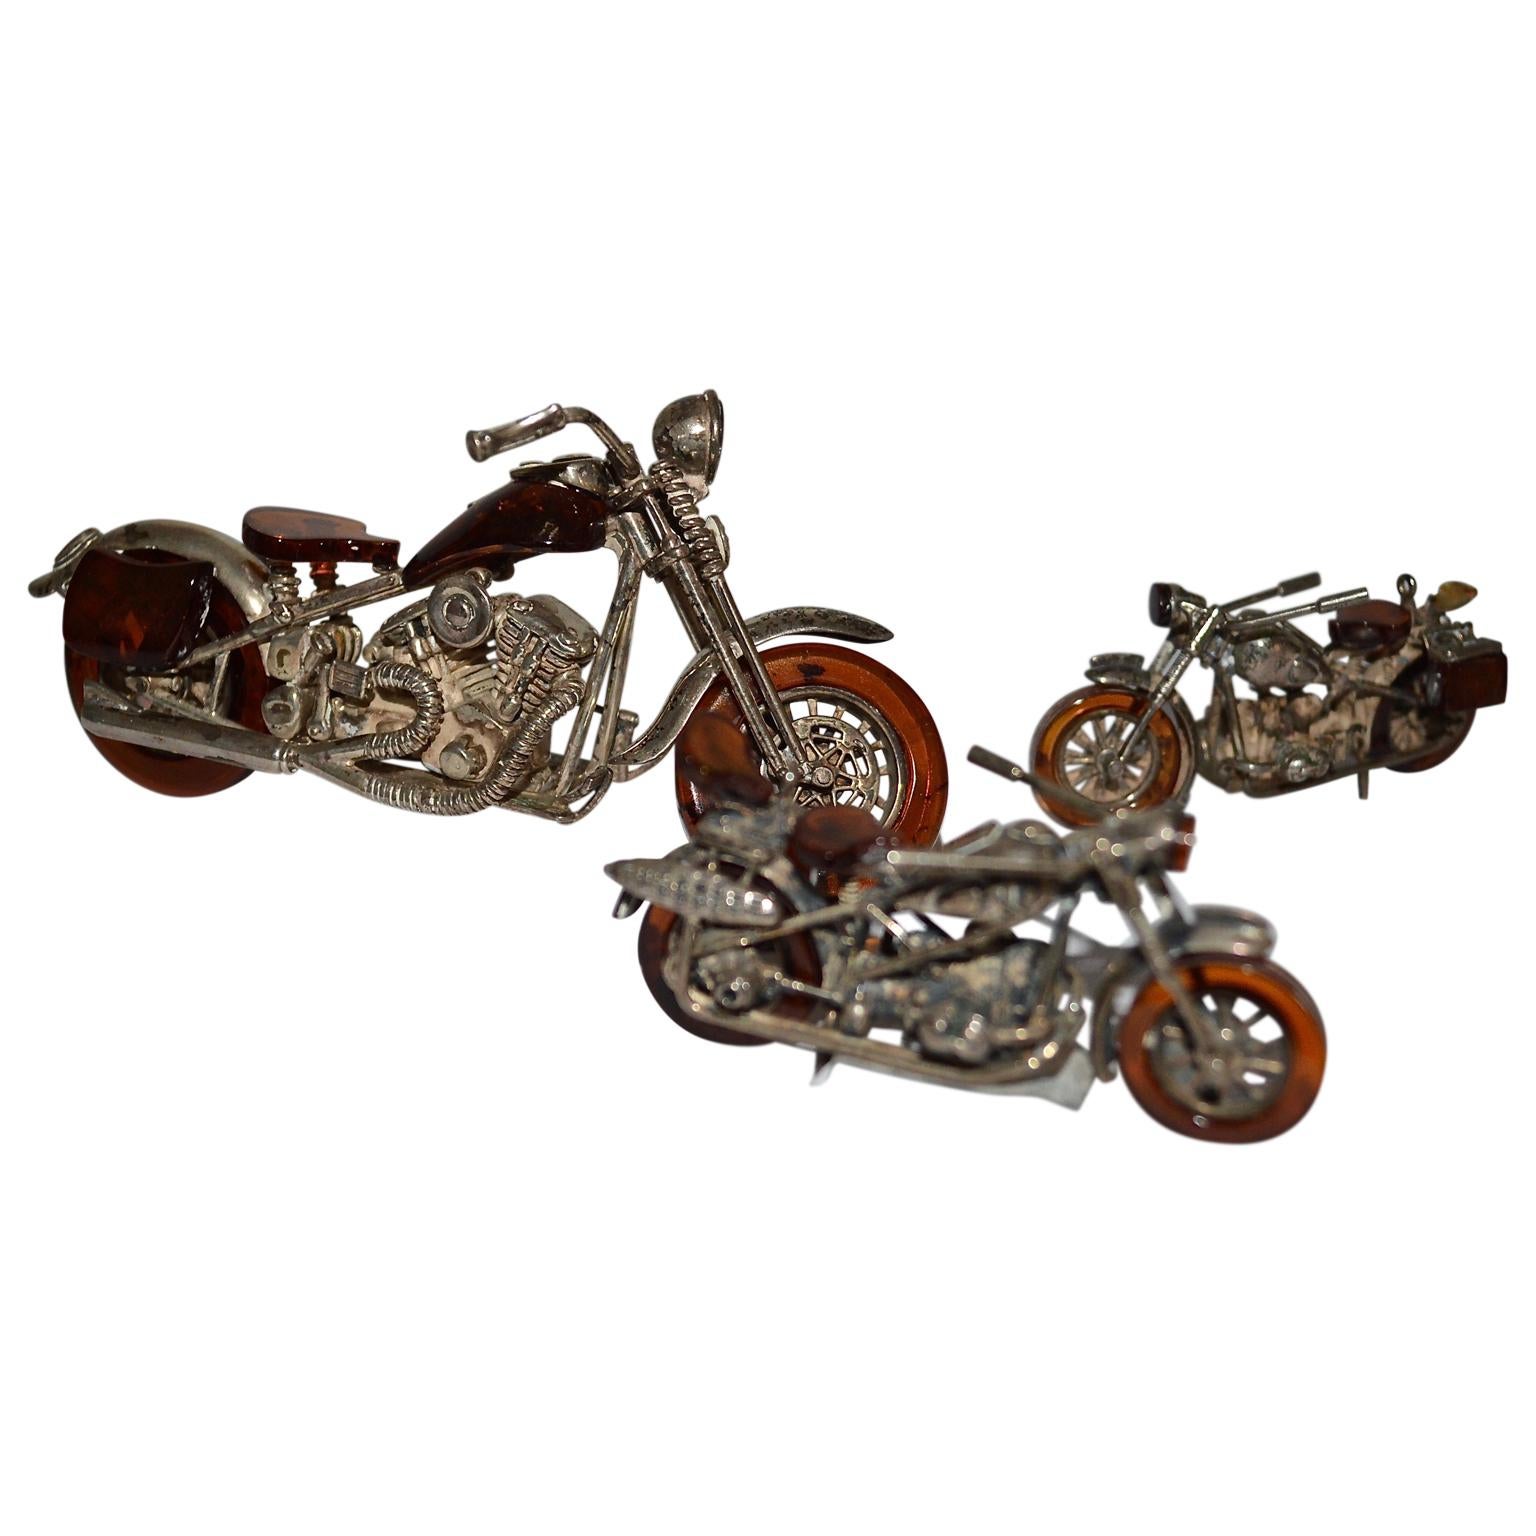 Set de 3 motos miniatures de style Harley Davidson en ambre et argent